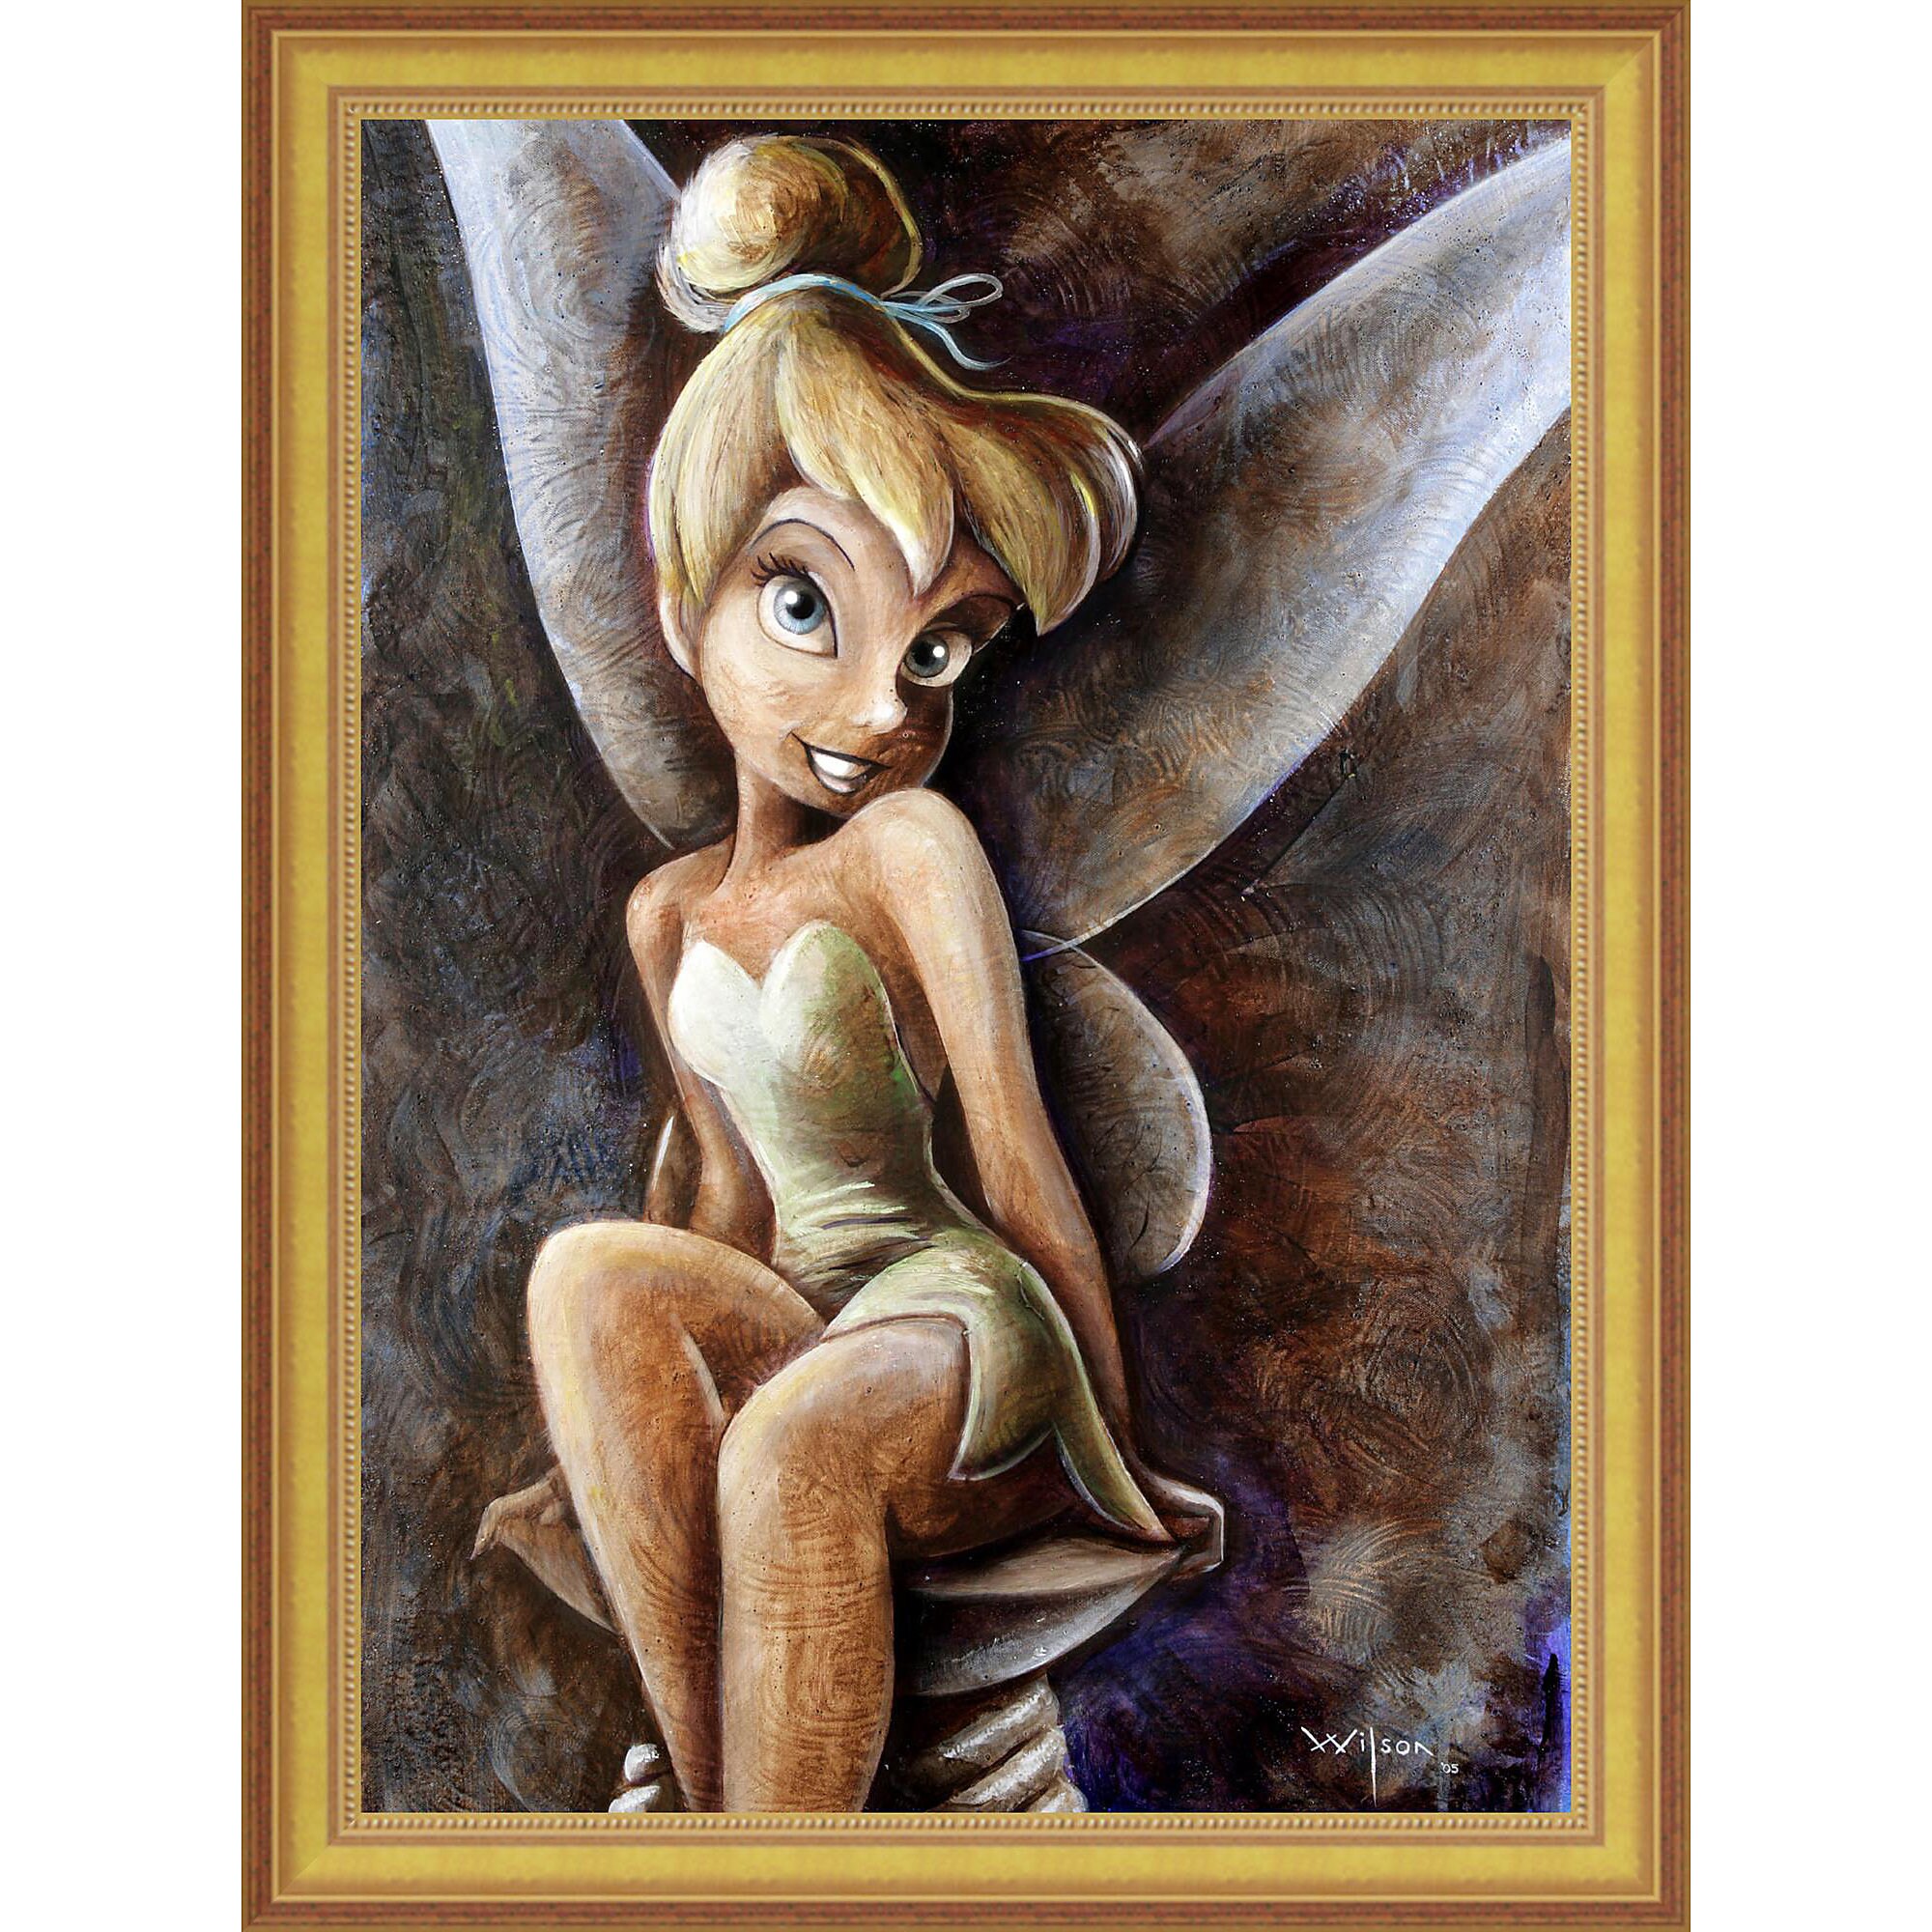 Tinker Bell ''Classic Tinker Bell'' Giclée by Darren Wilson